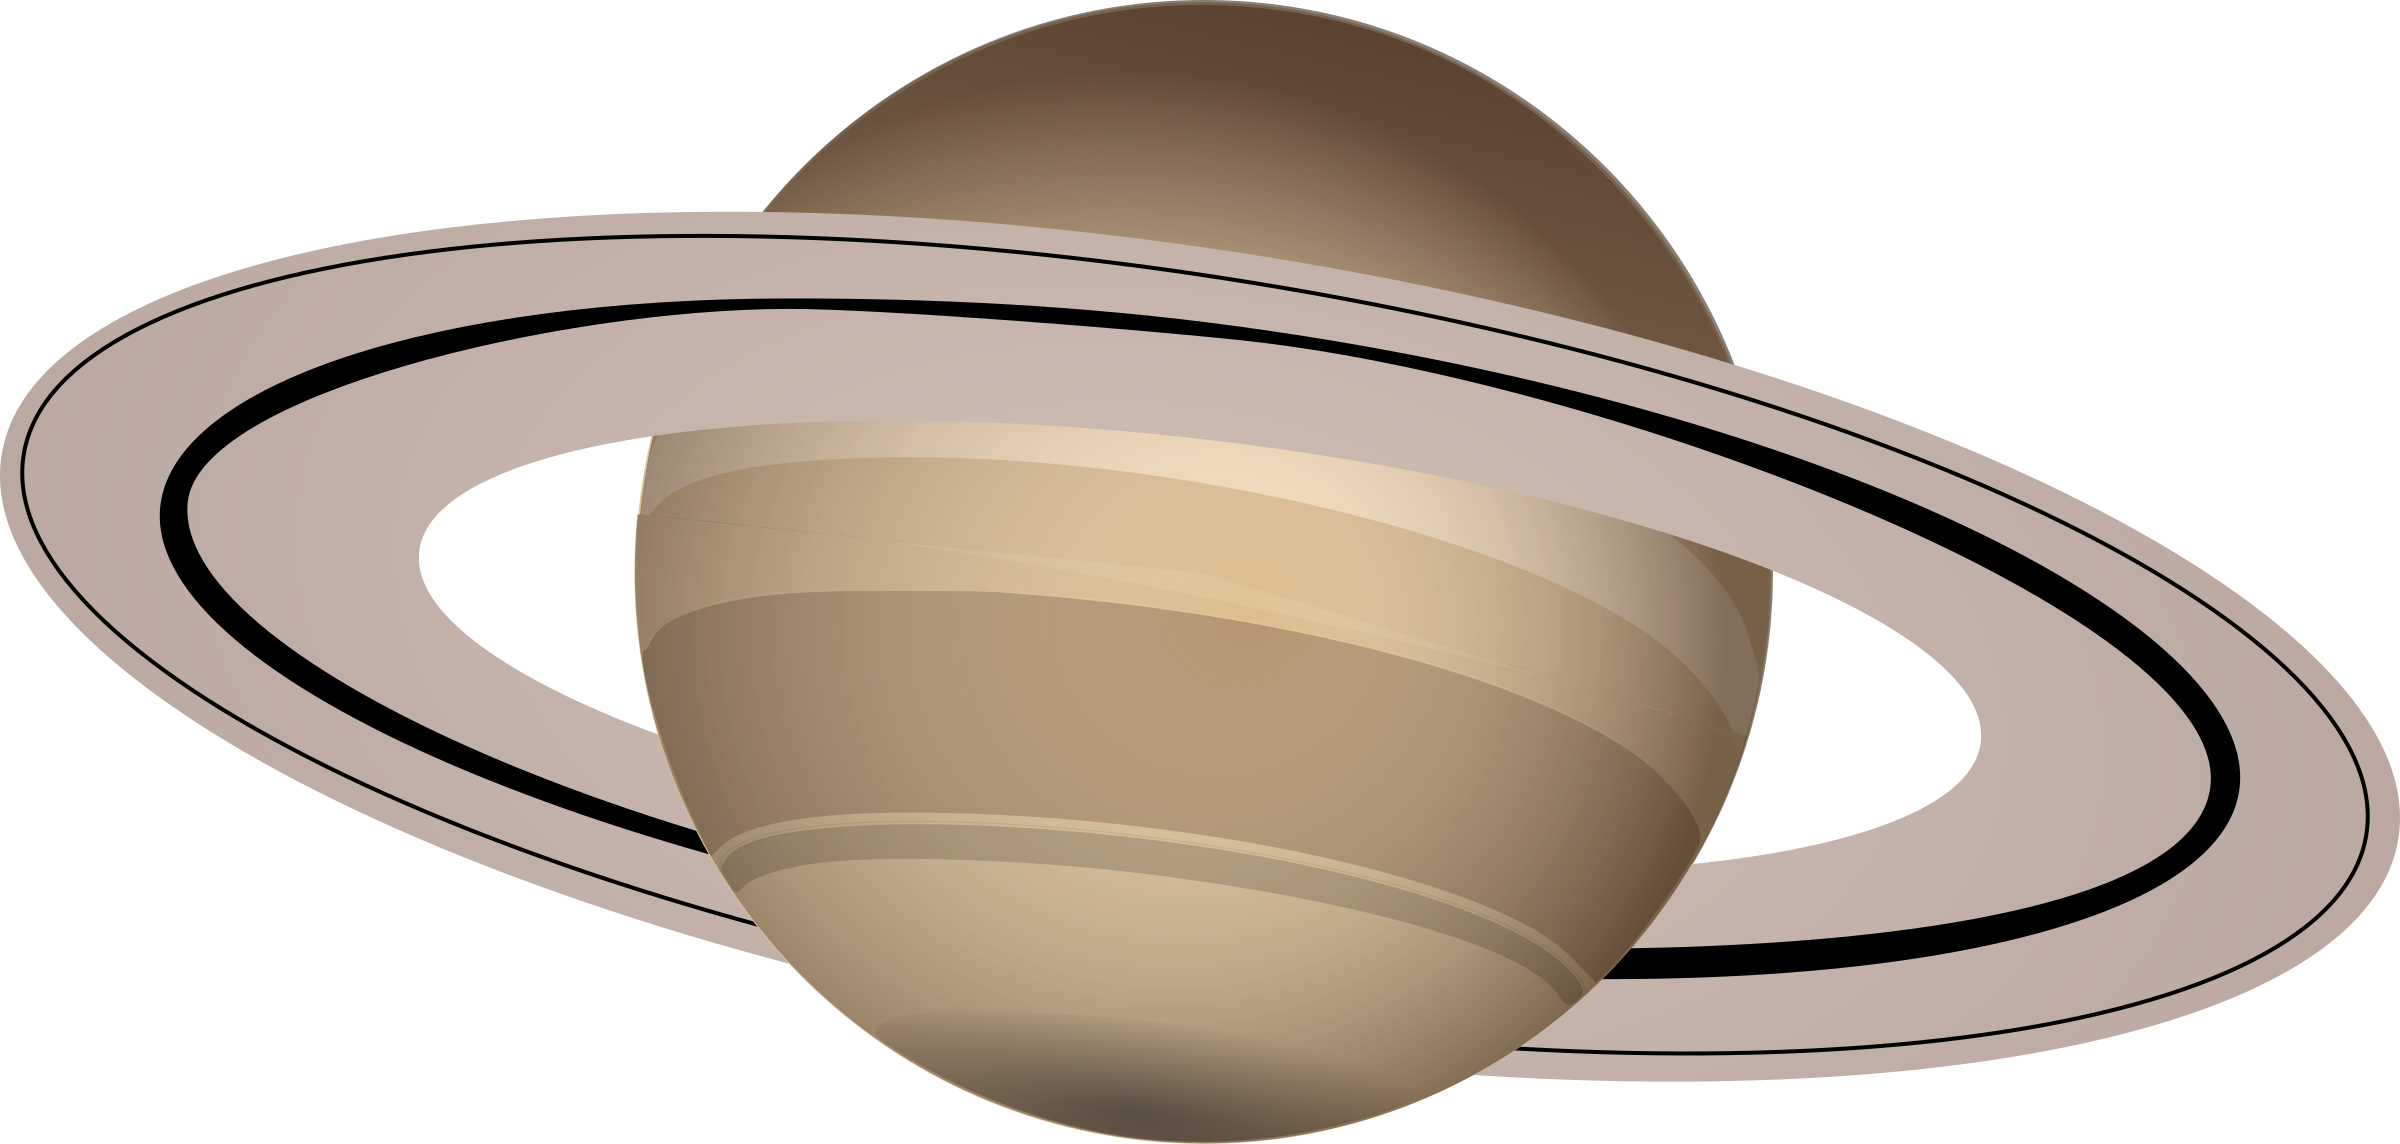 Планета сатурн картинка для детей. Сатурн Планета солнечной системы. Планетасатурм для детей. Планета с кольцами Сатурн. Планета Сатурн для детей.